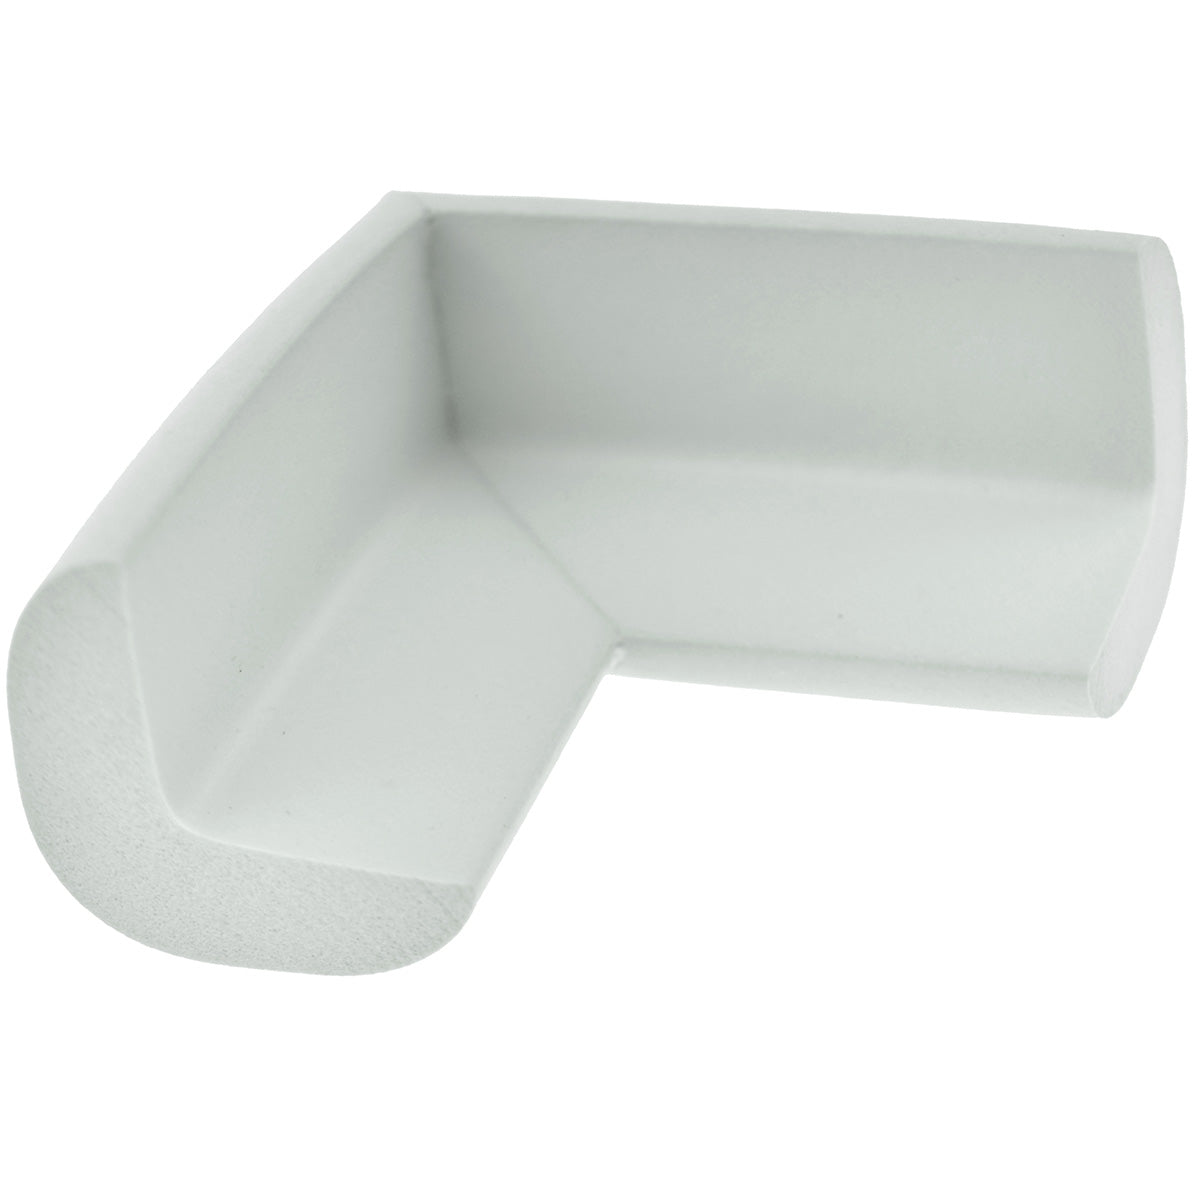 12 Pieces Gray Standard L-Shaped Foam Corner Protectors